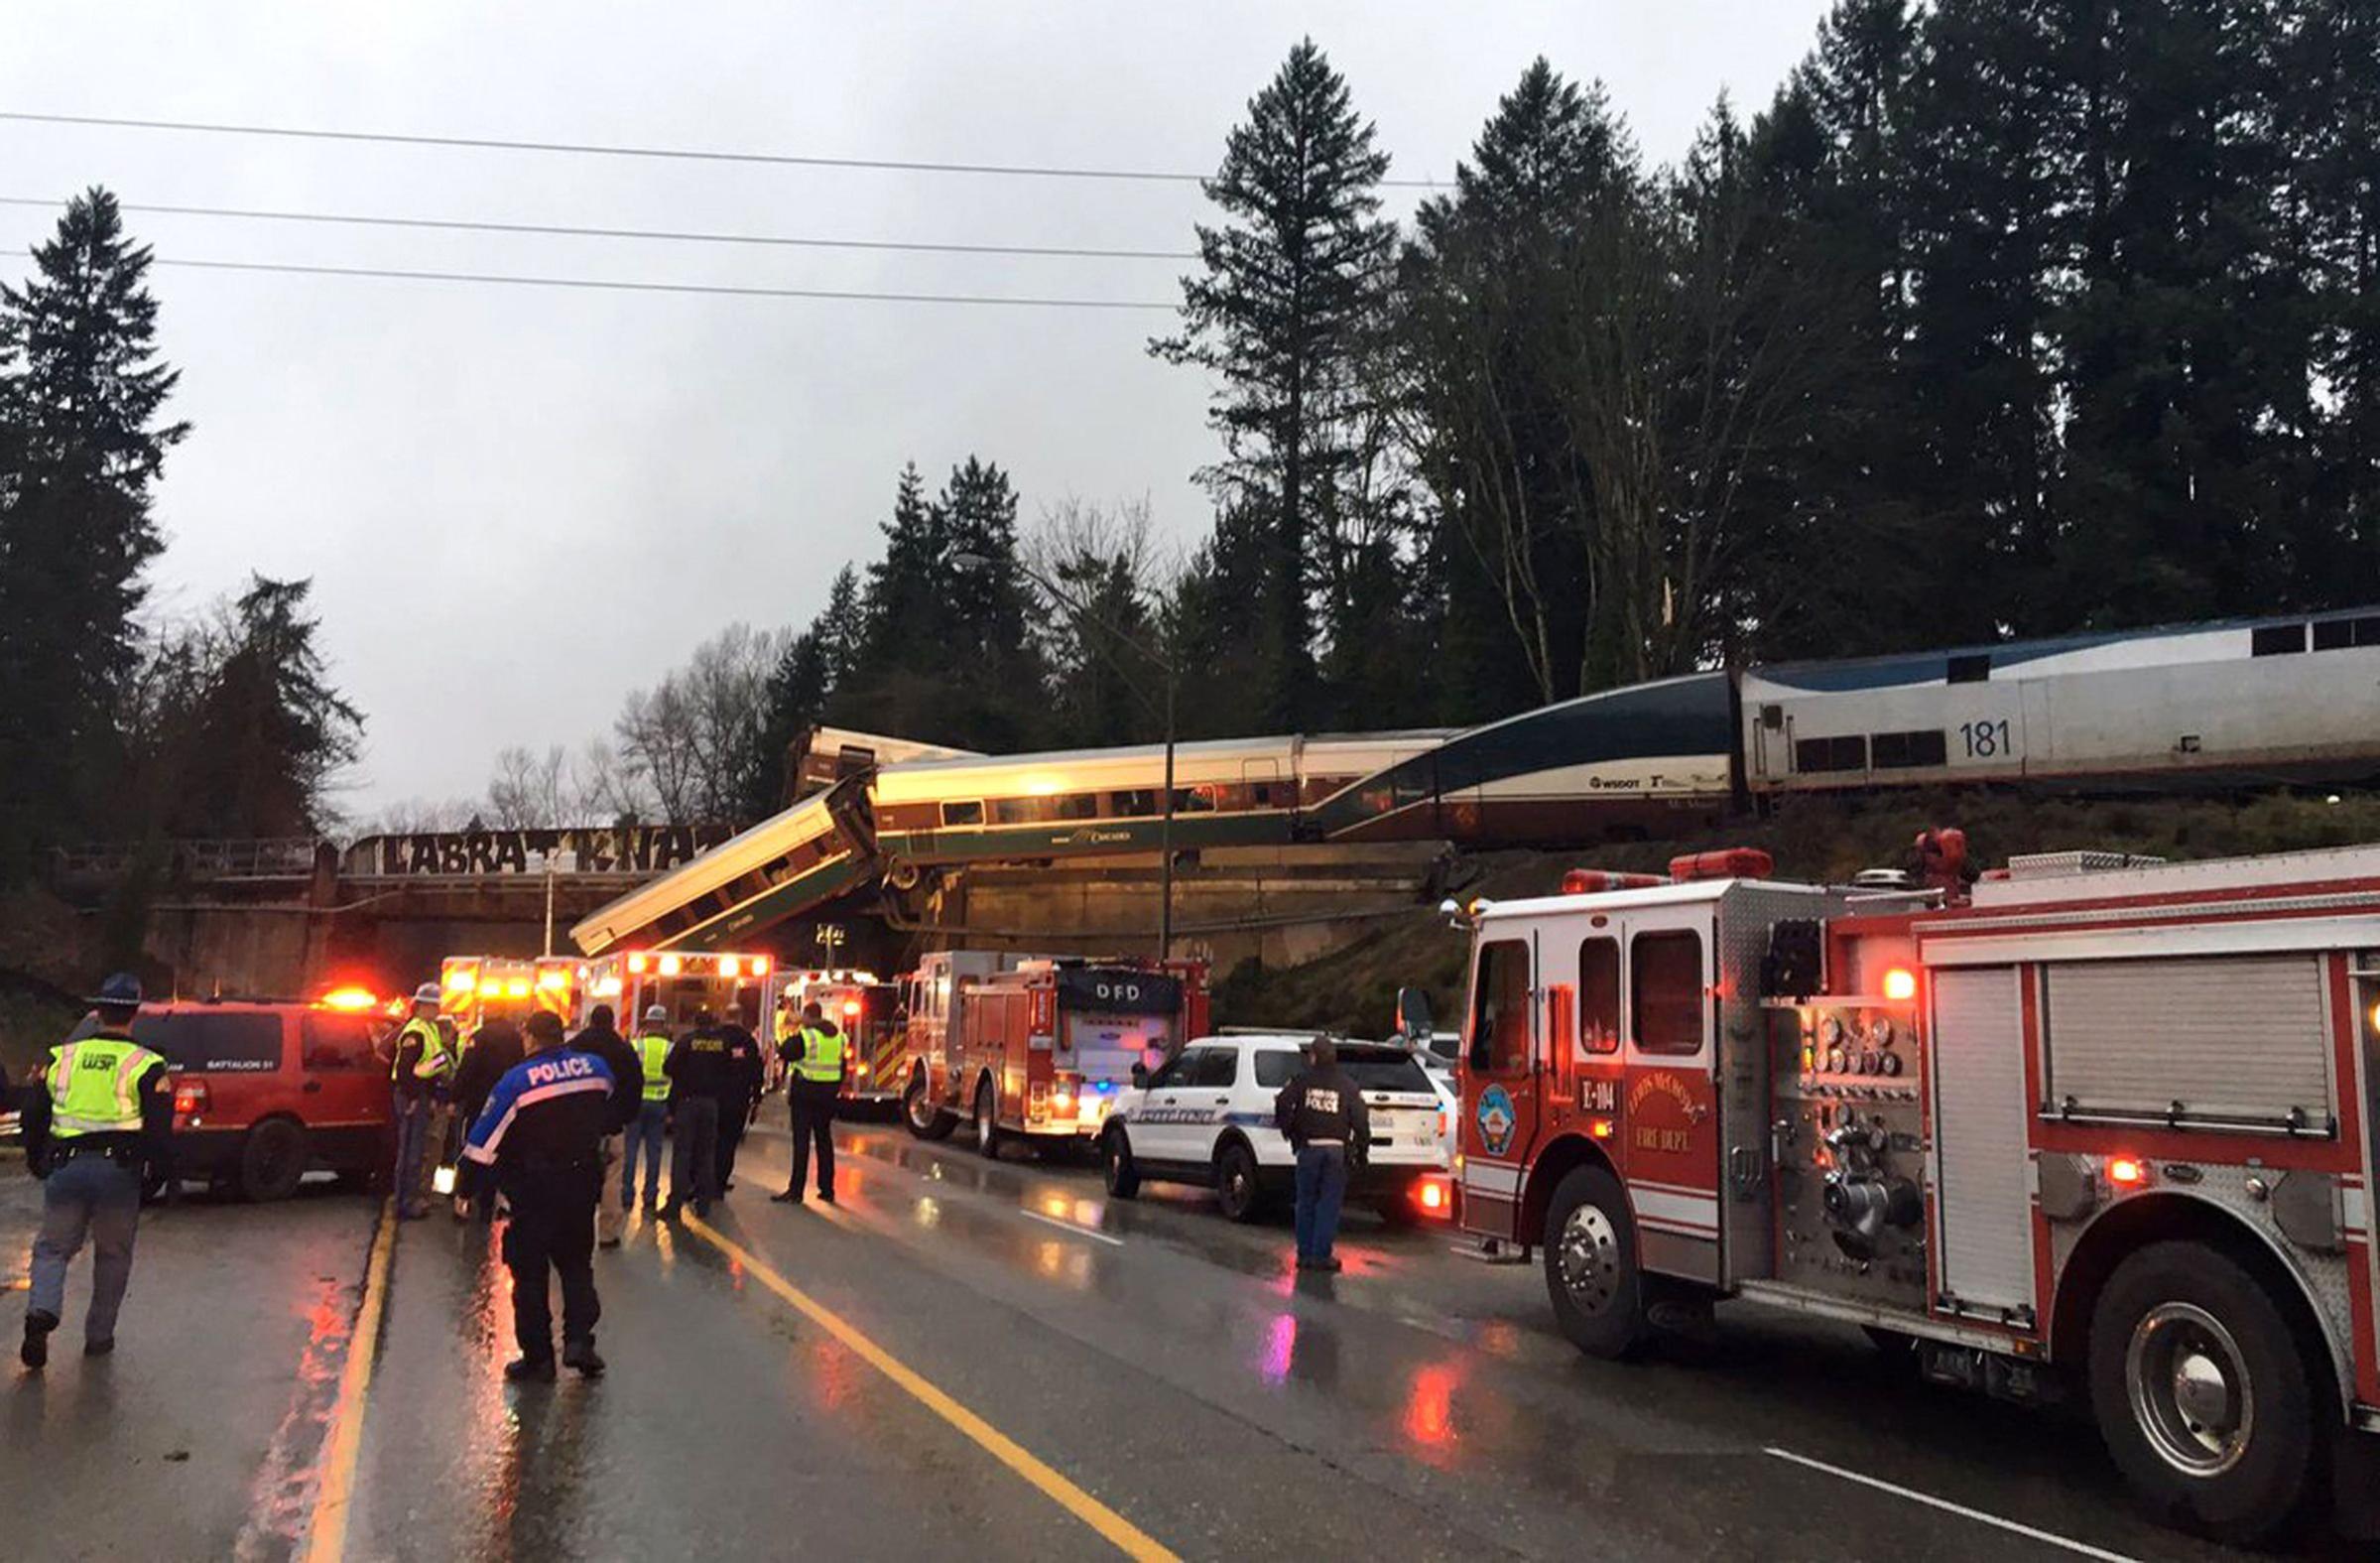 Train Derailment Washington State - 18 Dec 2017